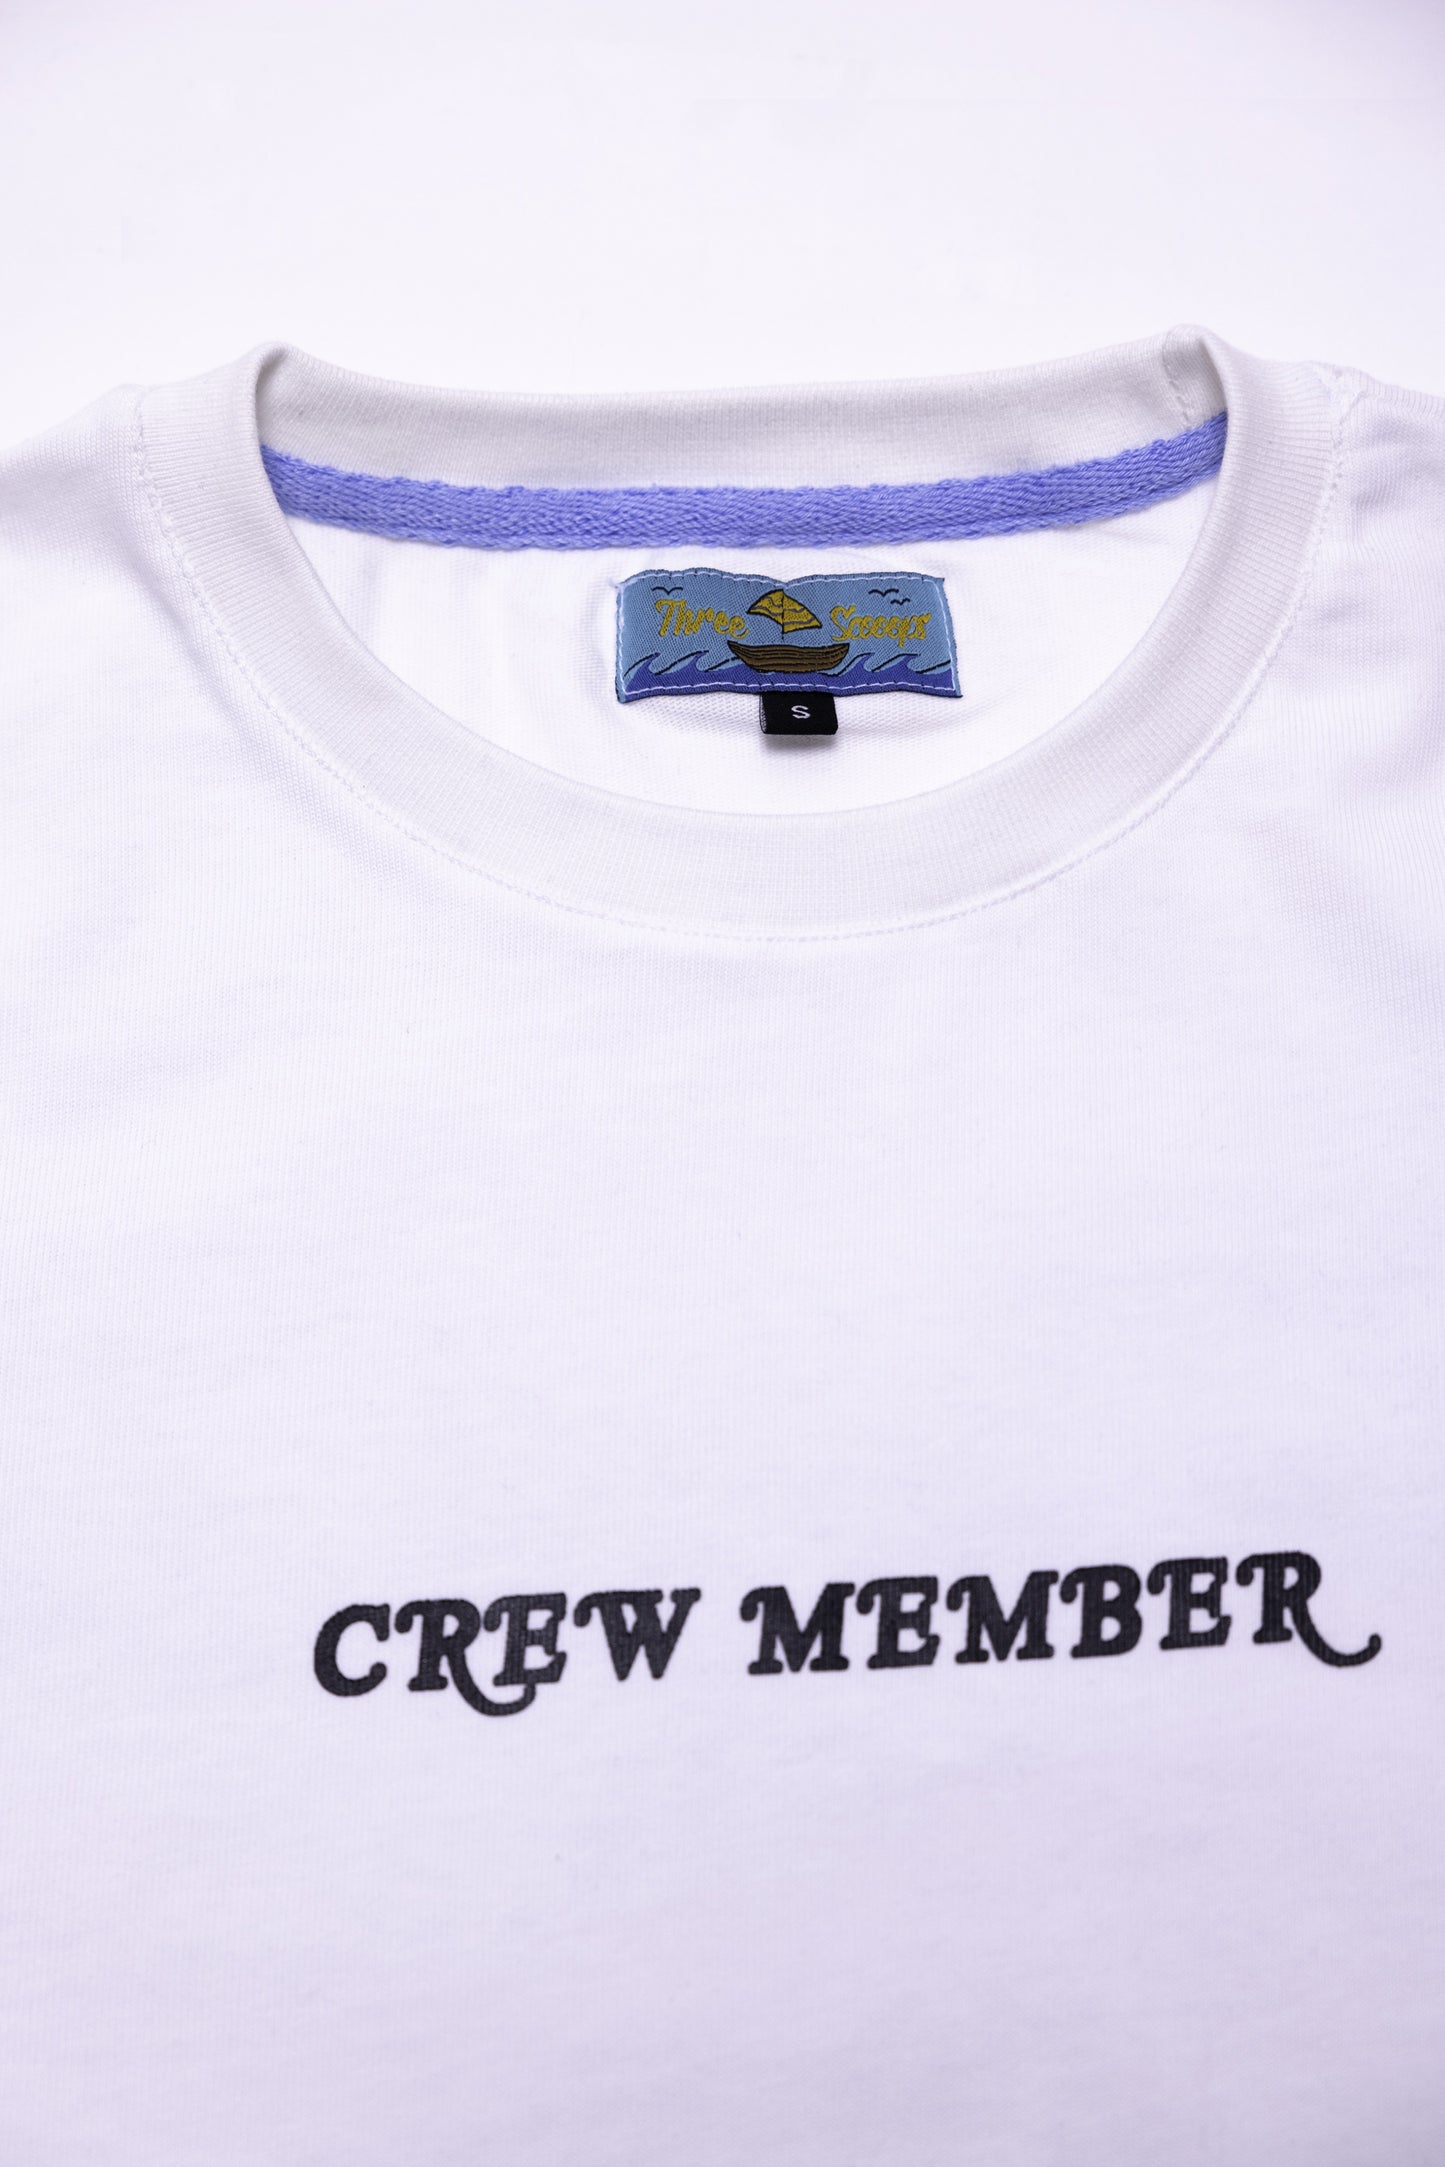 Crew Member Long Sleeve (White)